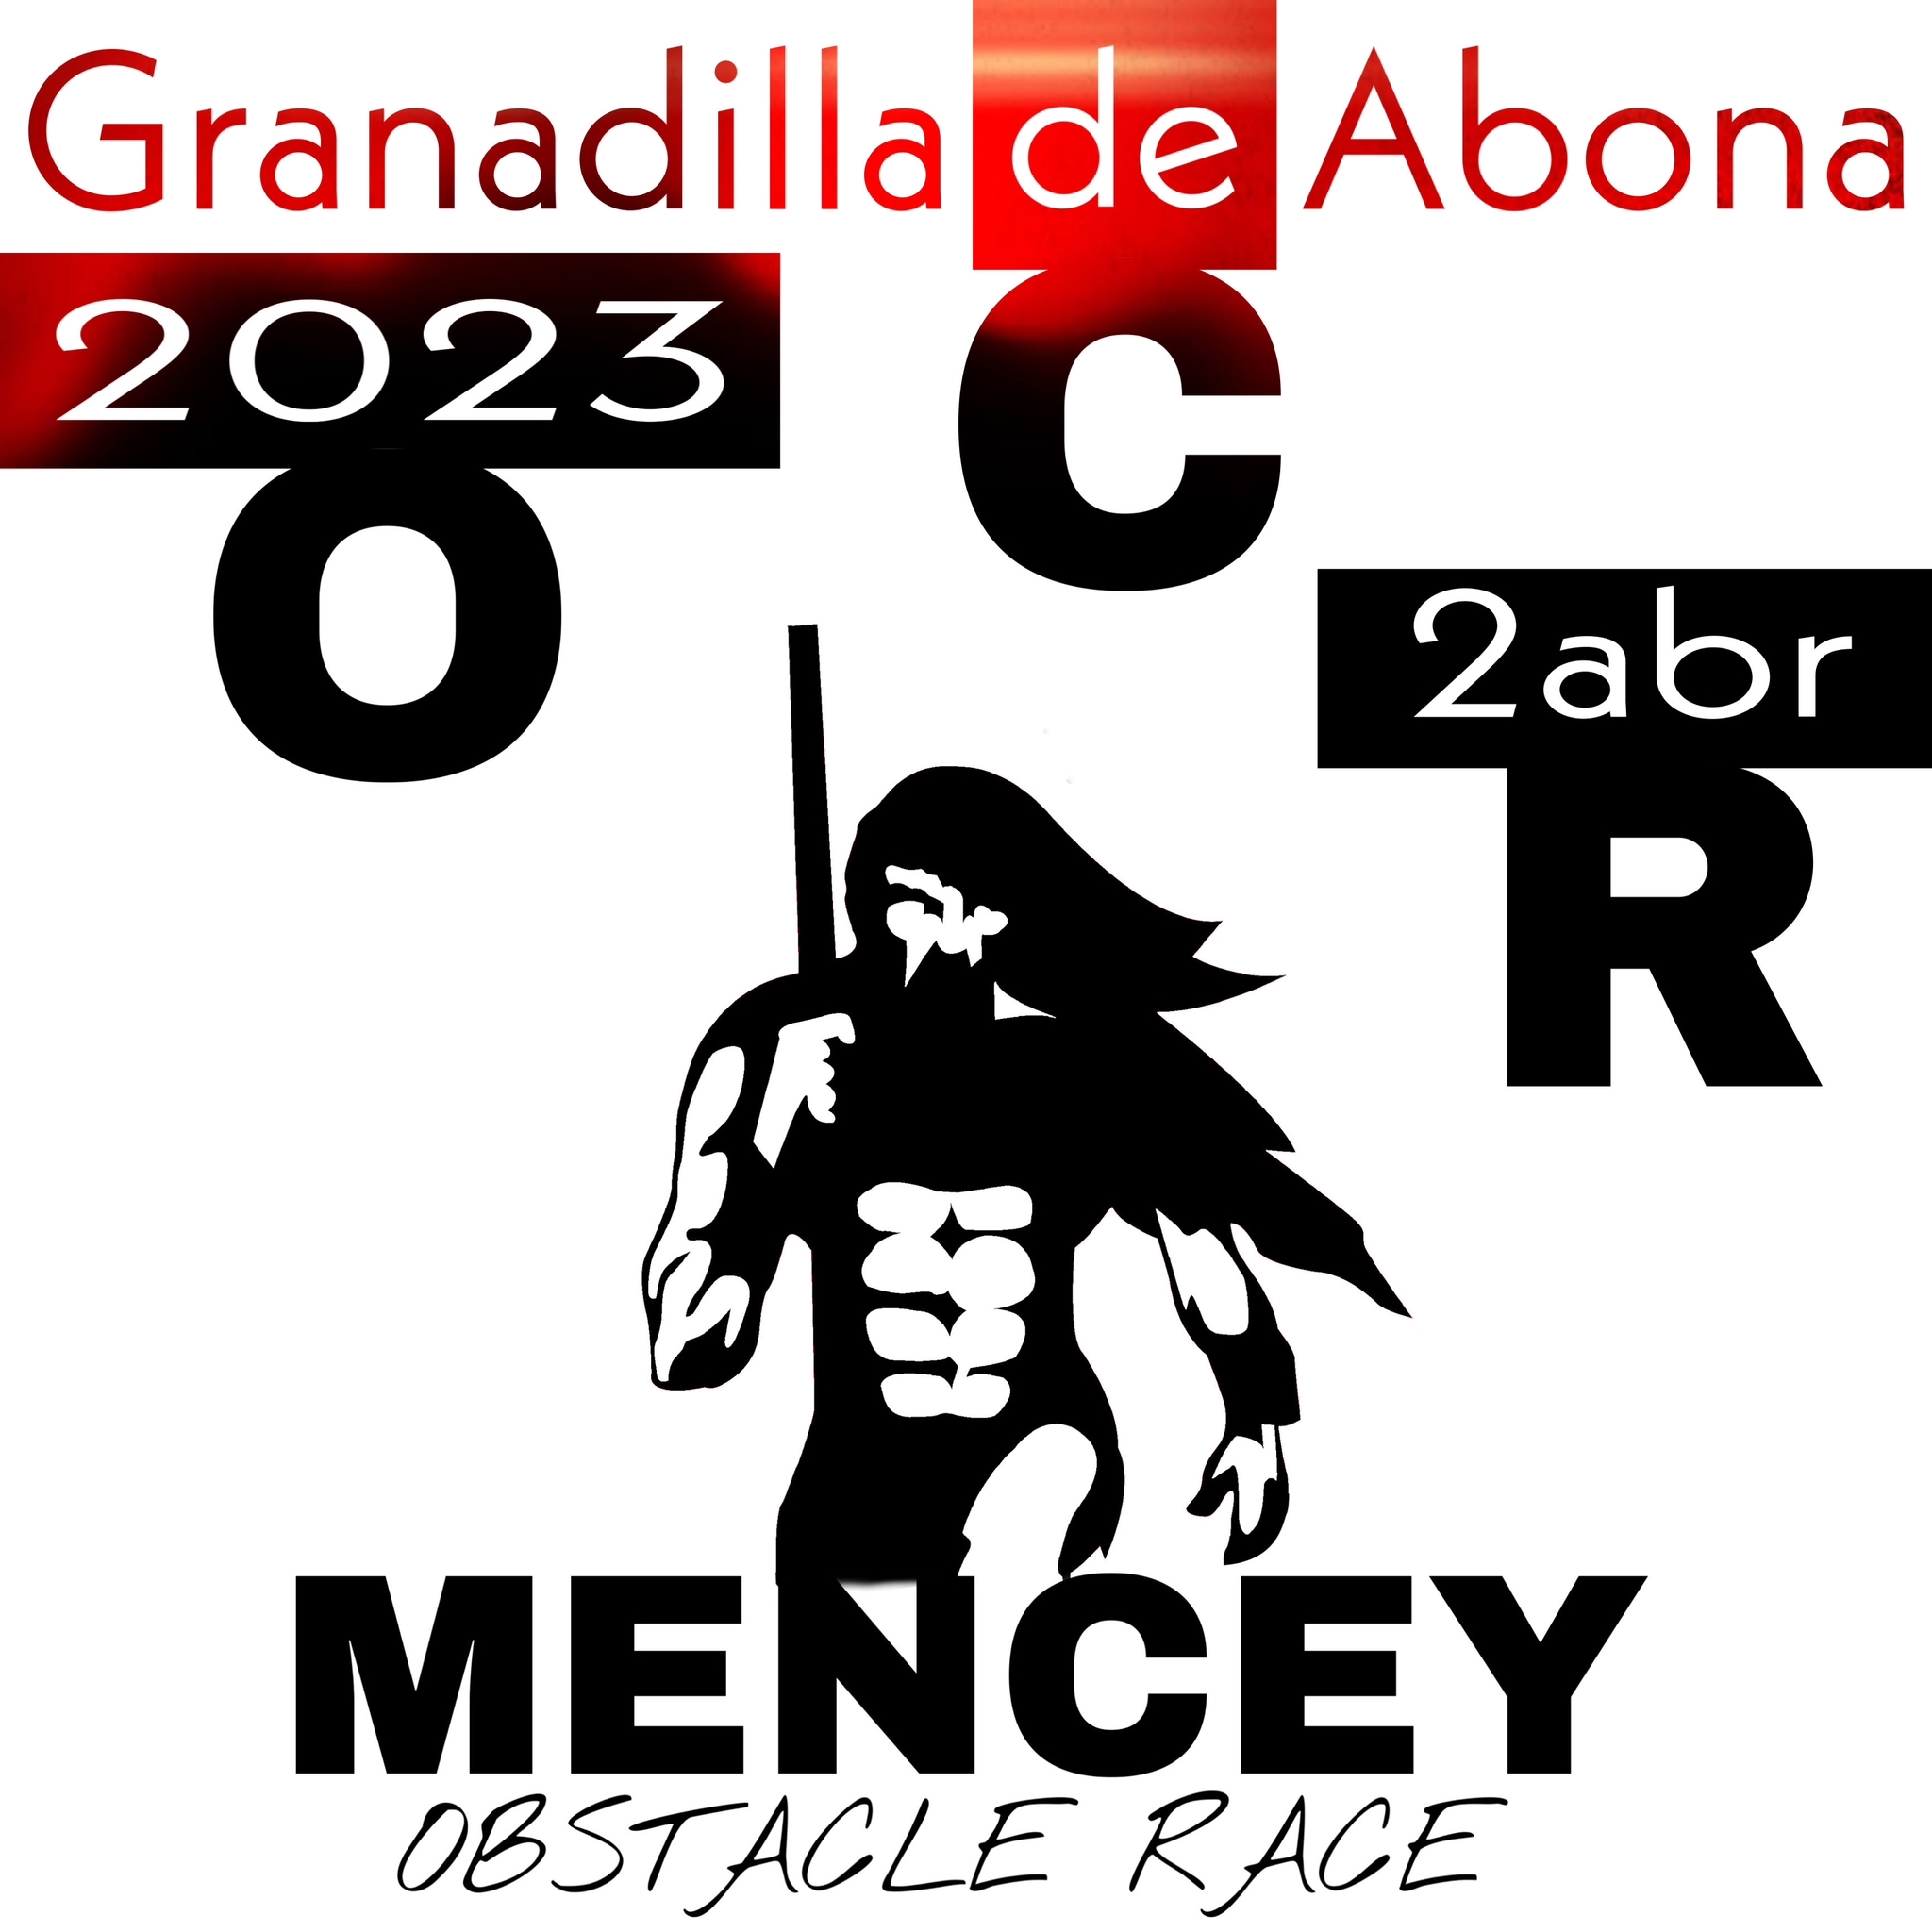 OCR MENCEY GRANADILLA 2023 - Register